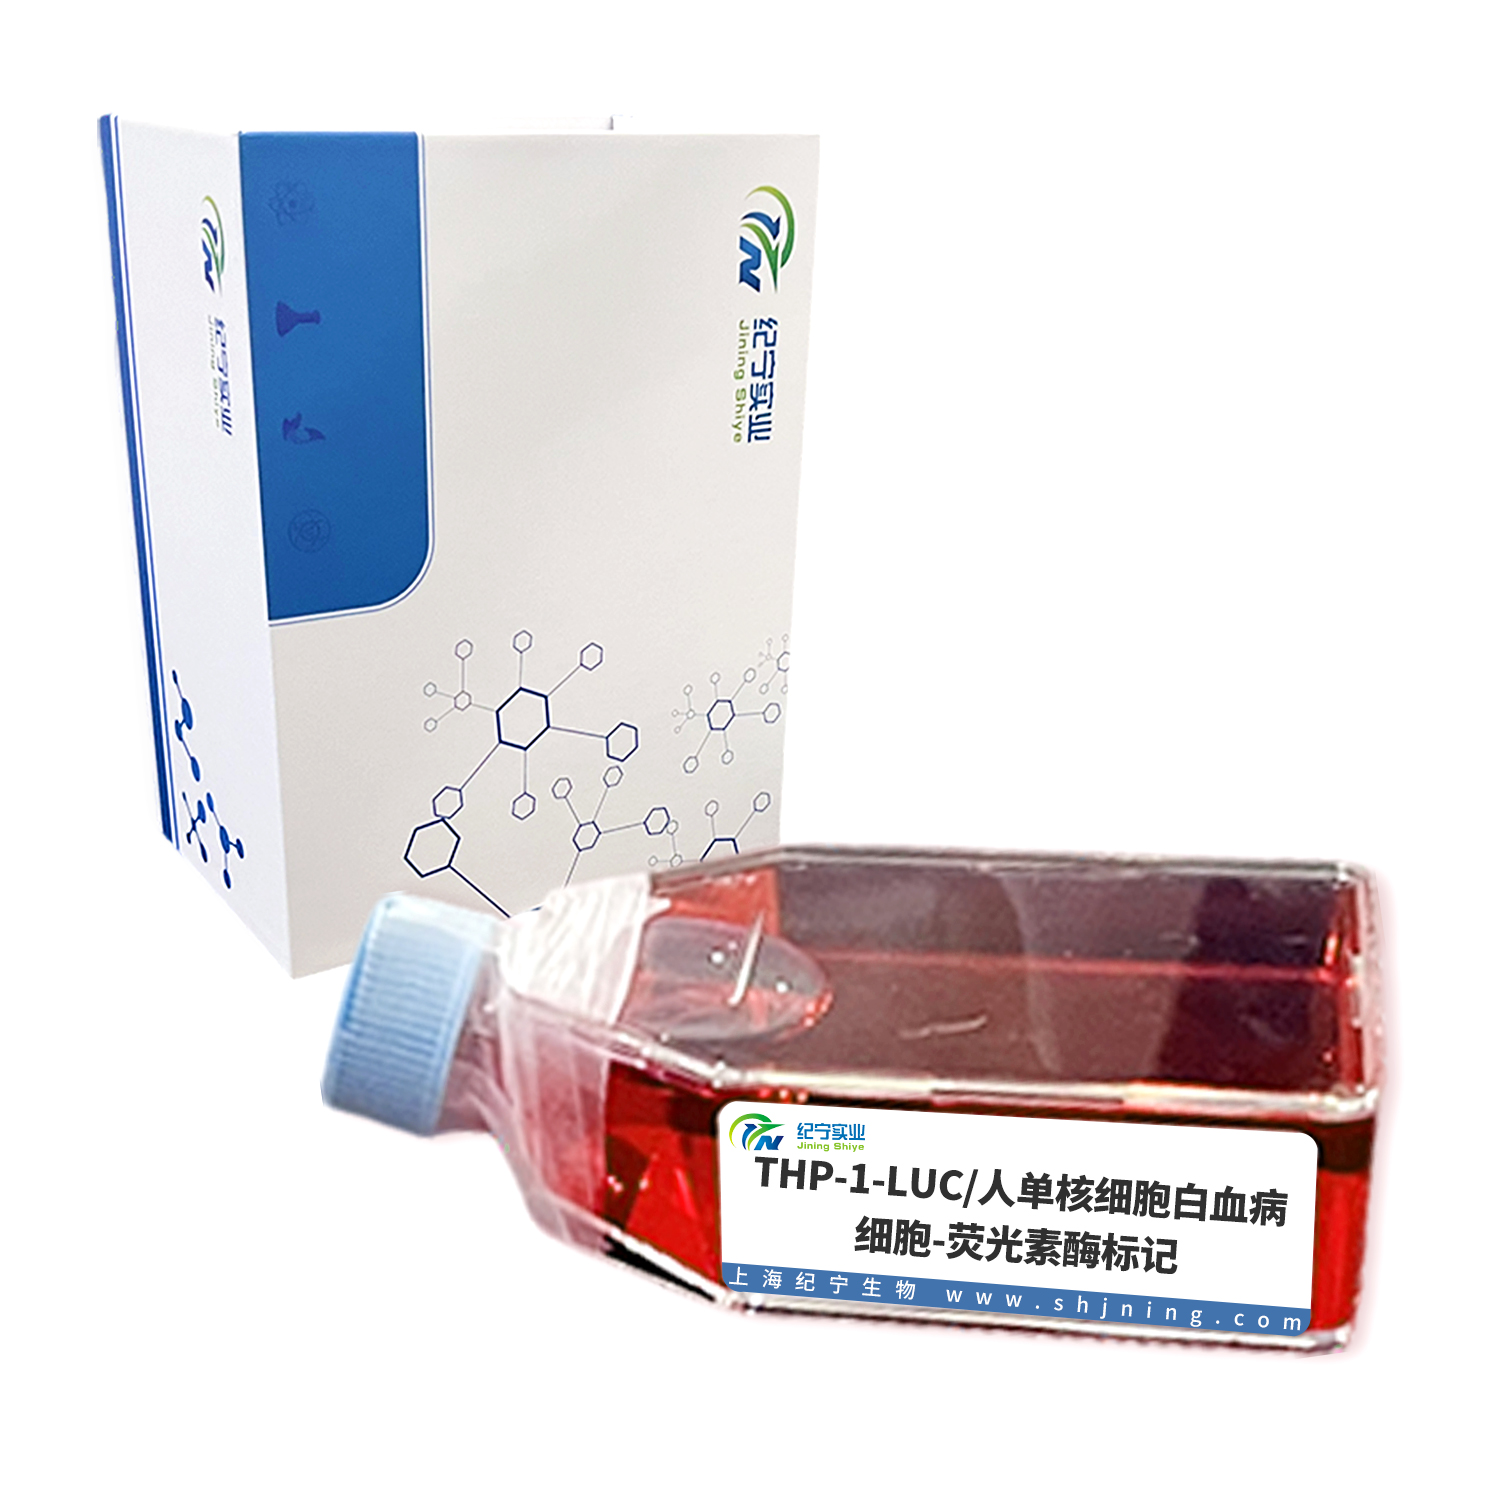 THP-1-LUC/人单核细胞白血病细胞-荧光素酶标记